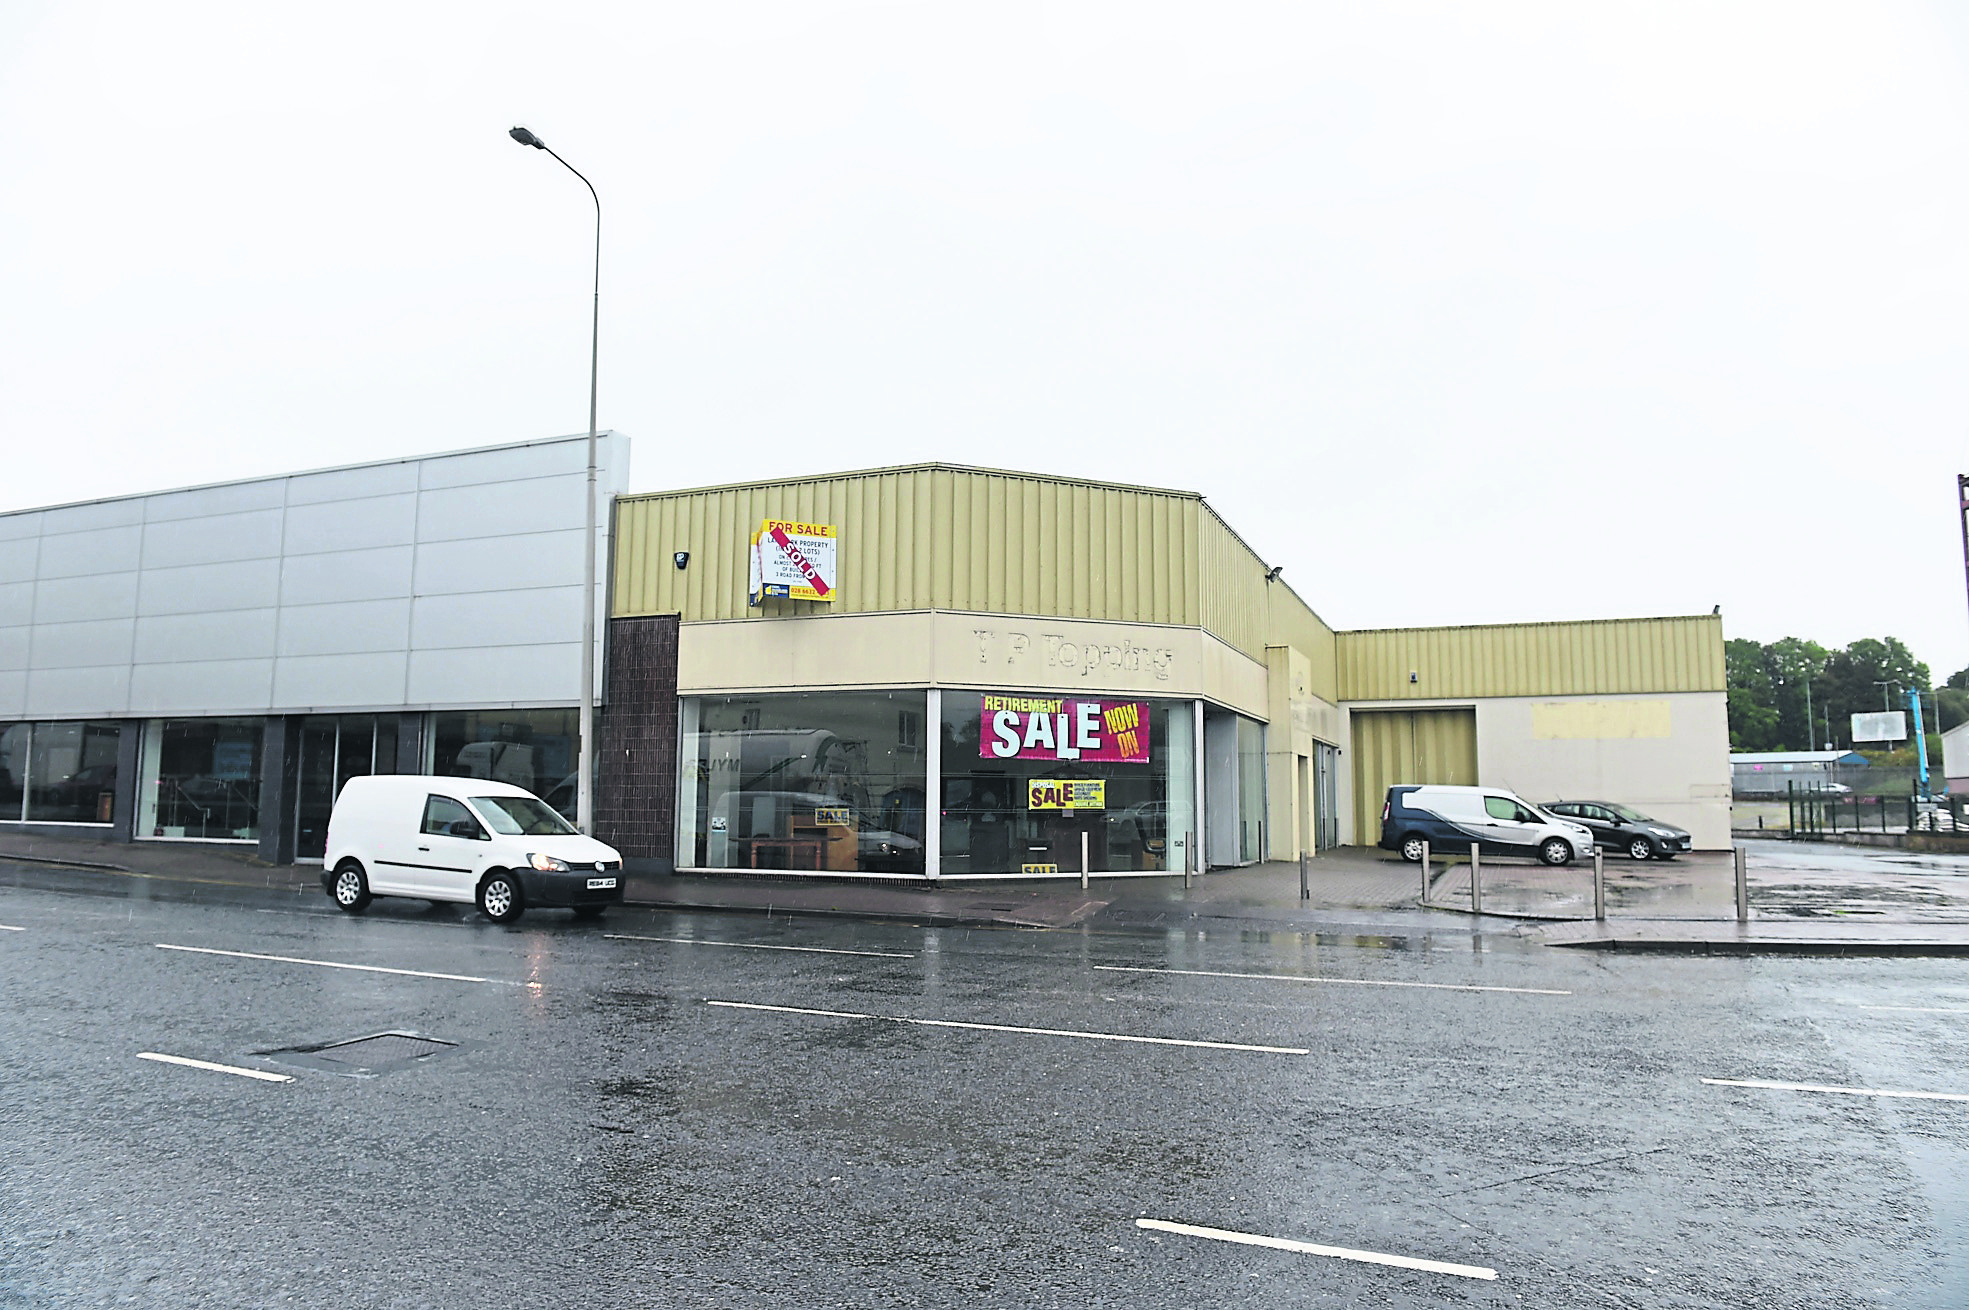 New Enniskillen McDonald's gets Council's green light - The Fermanagh ...